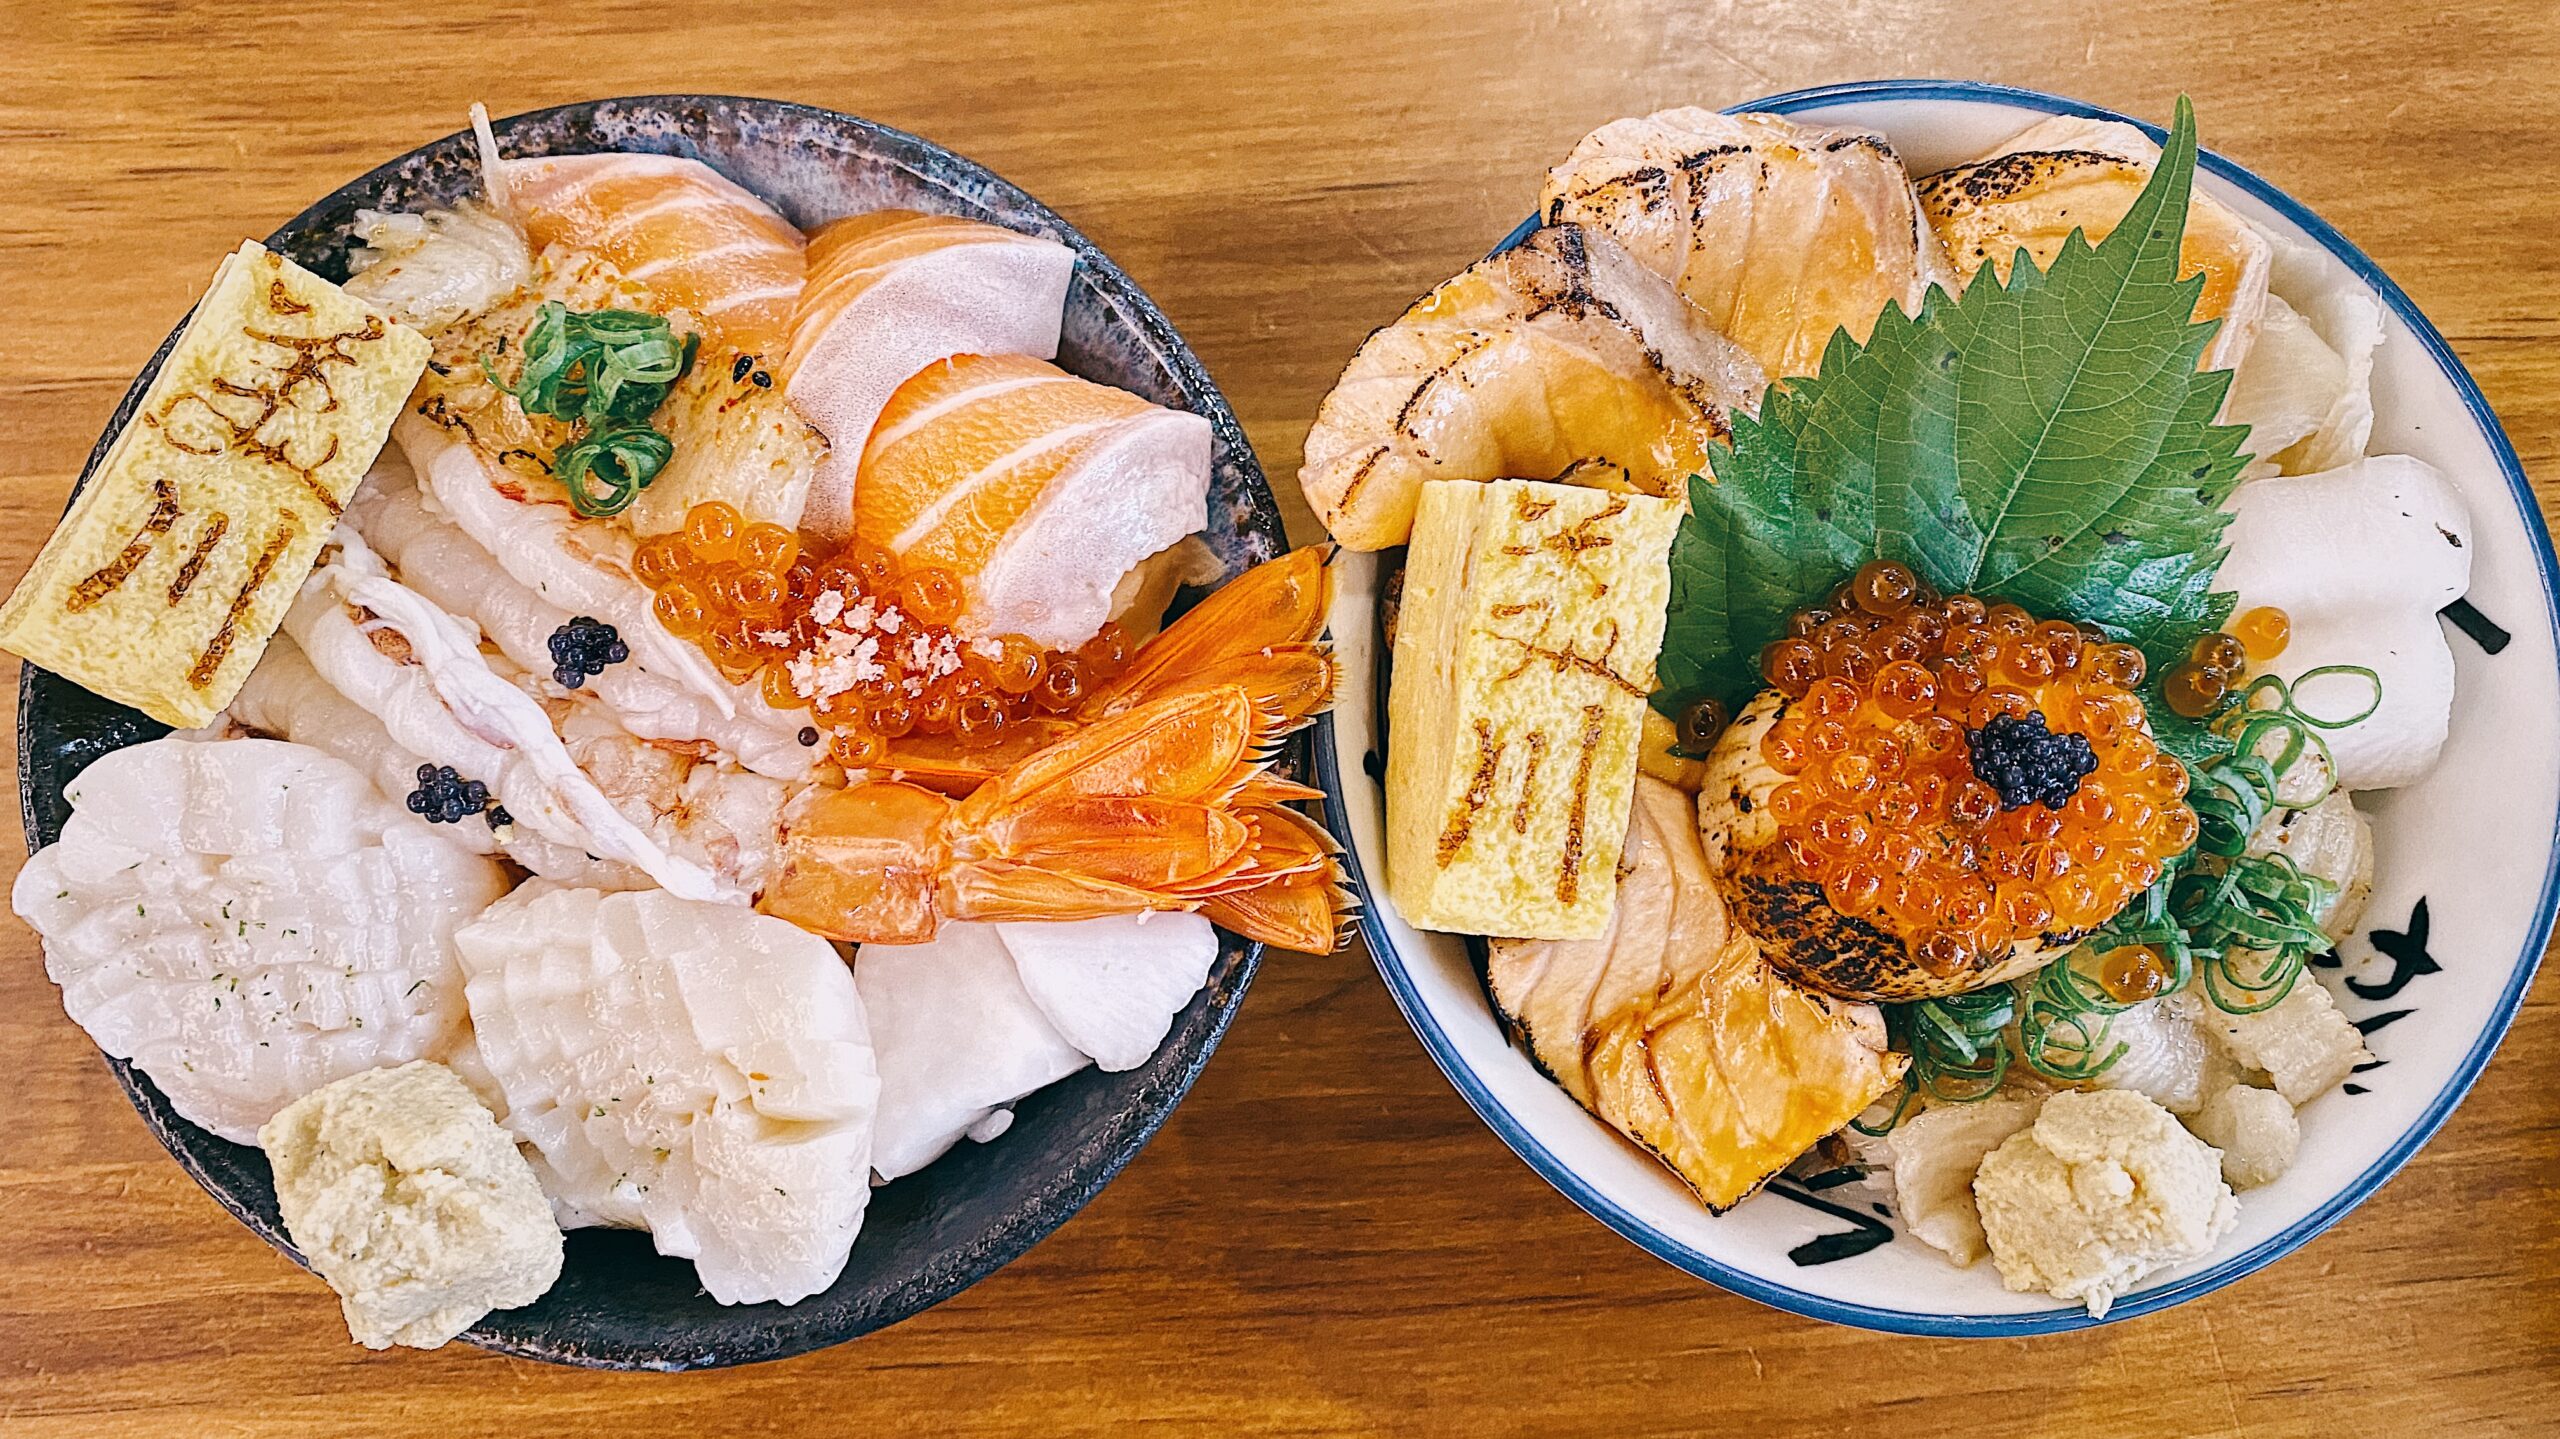 即時熱門文章：【內湖美食】美川壽司mikawa 新鮮食材 一次上癮令人驚豔的海鮮丼飯 (菜單)